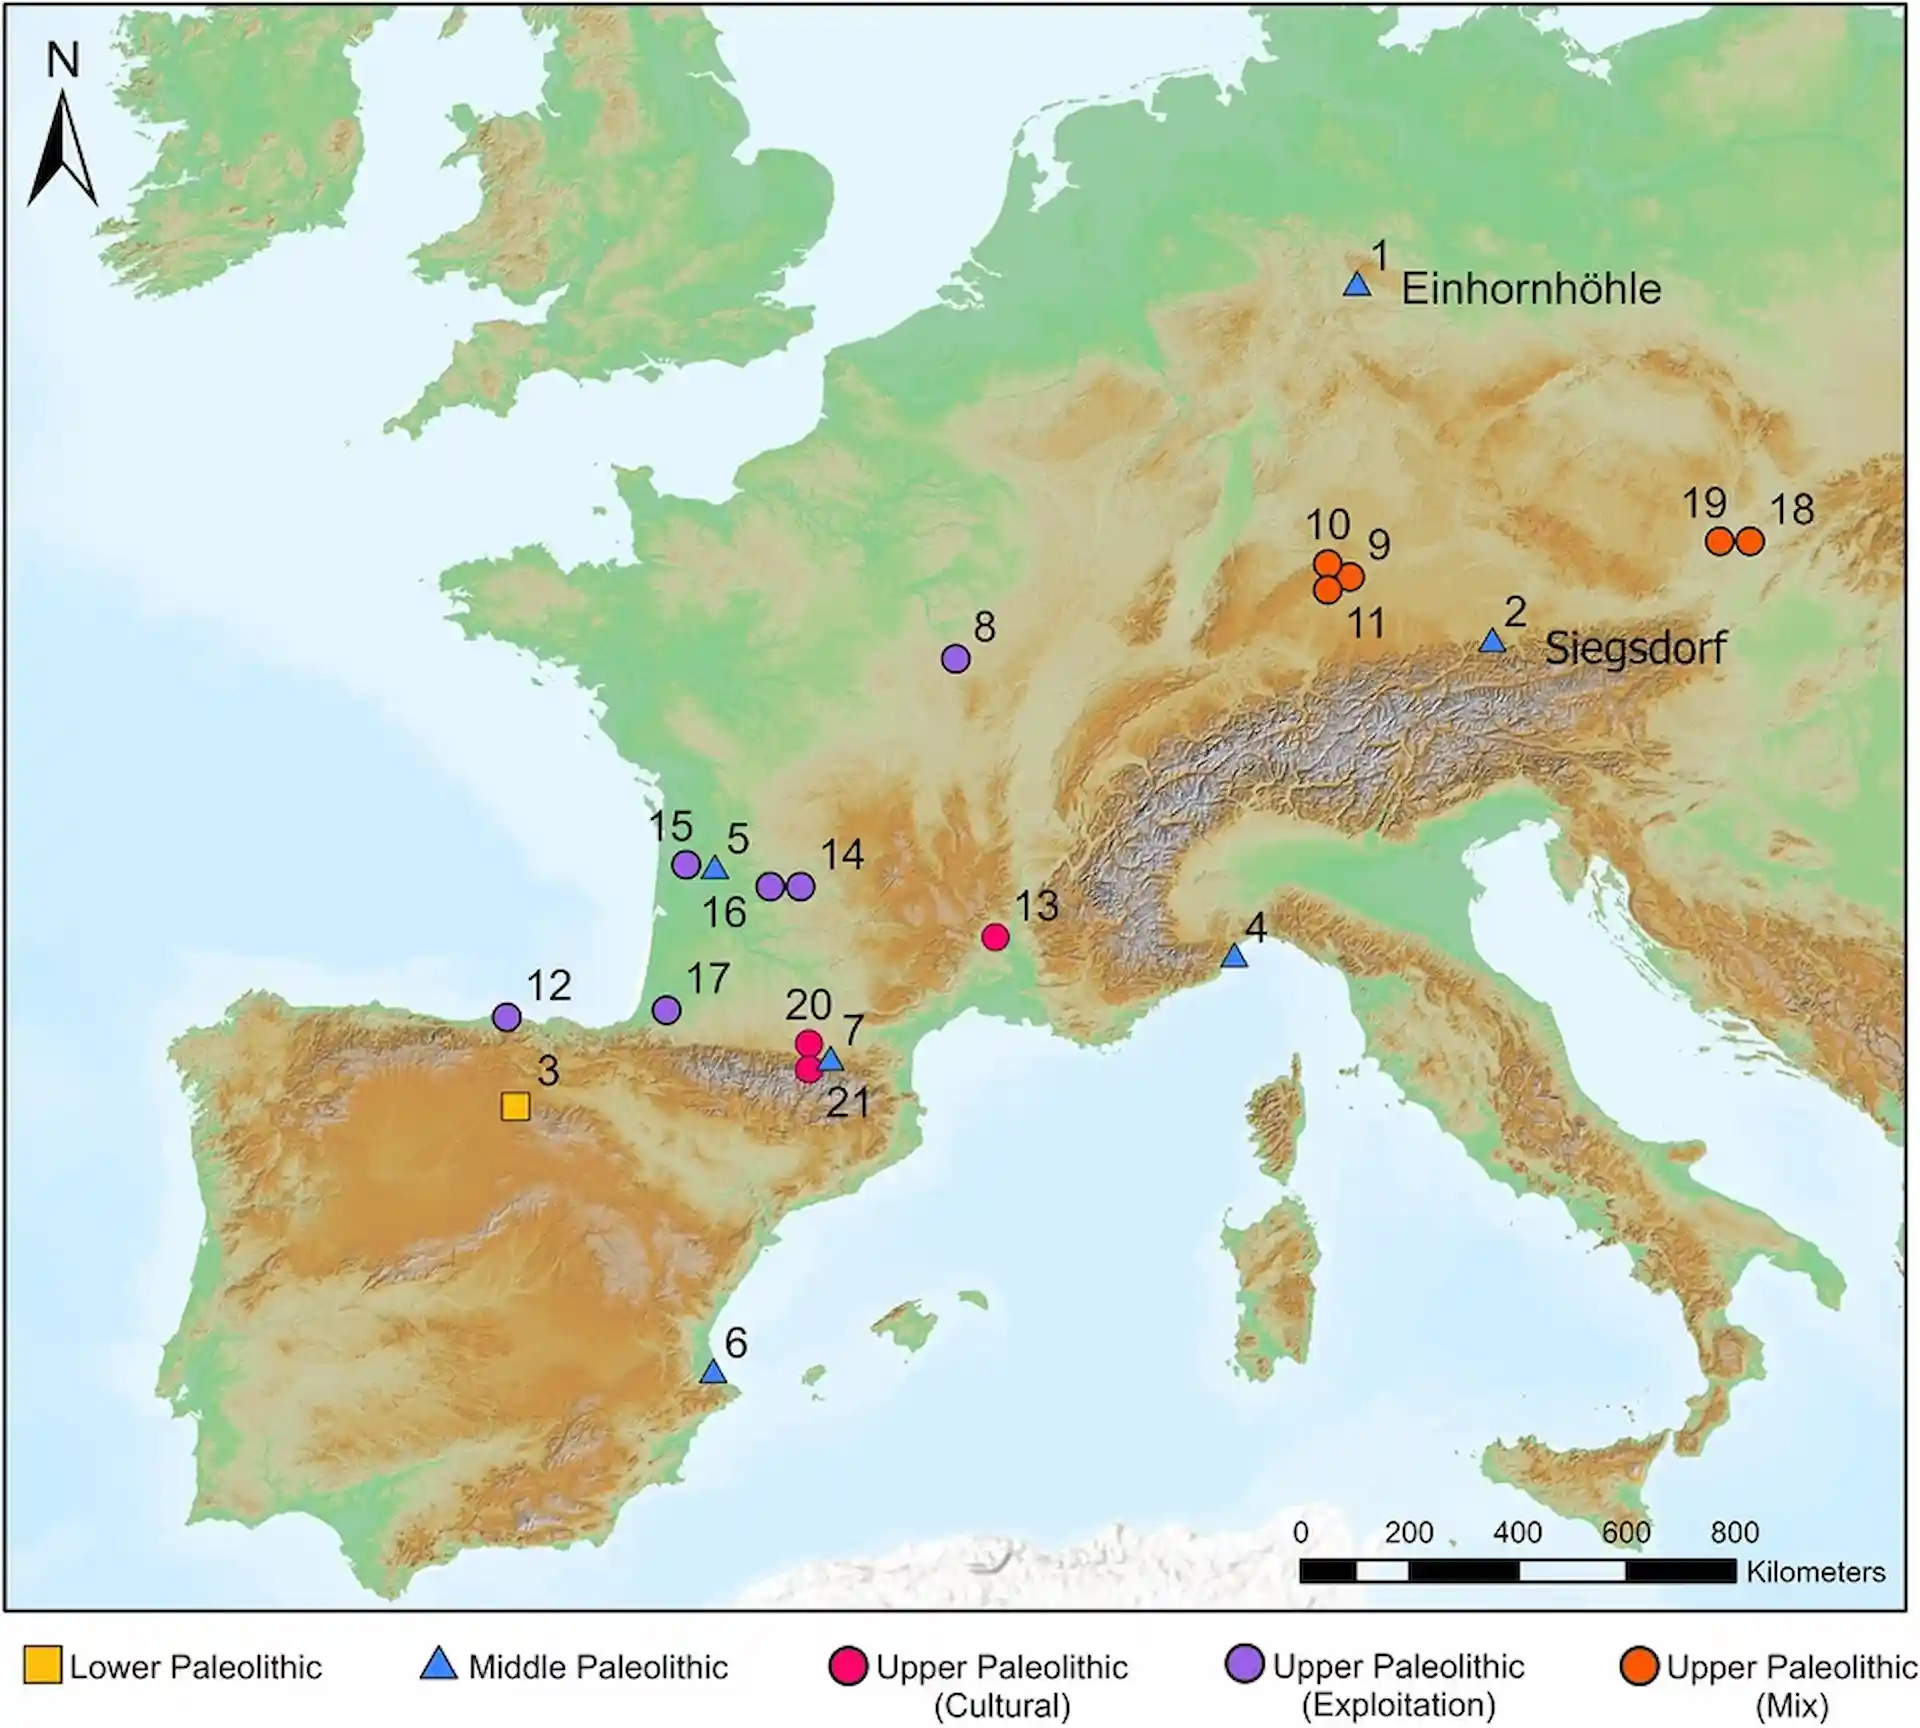 Sitios paleolíticos con evidencia directa de interacción entre humanos y leones de las cavernas en forma de actividad de subsistencia, cultura (es decir, arte rupestre o móvil), o ambas / Mapa: University of Tübingen